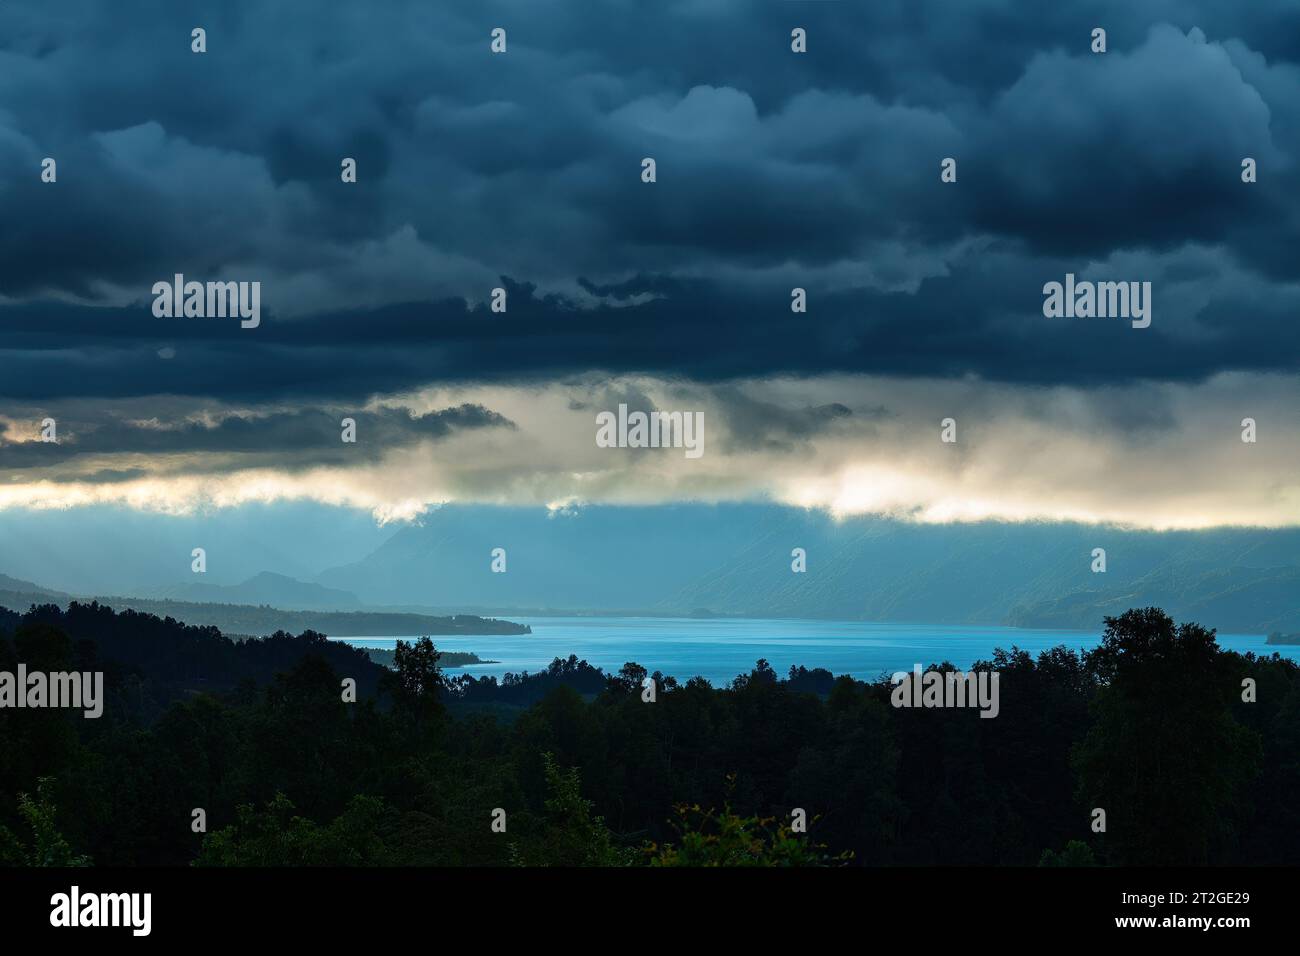 Nuages orageux au-dessus du lac Villarrica dans la région d'Araucanie, Chili Banque D'Images